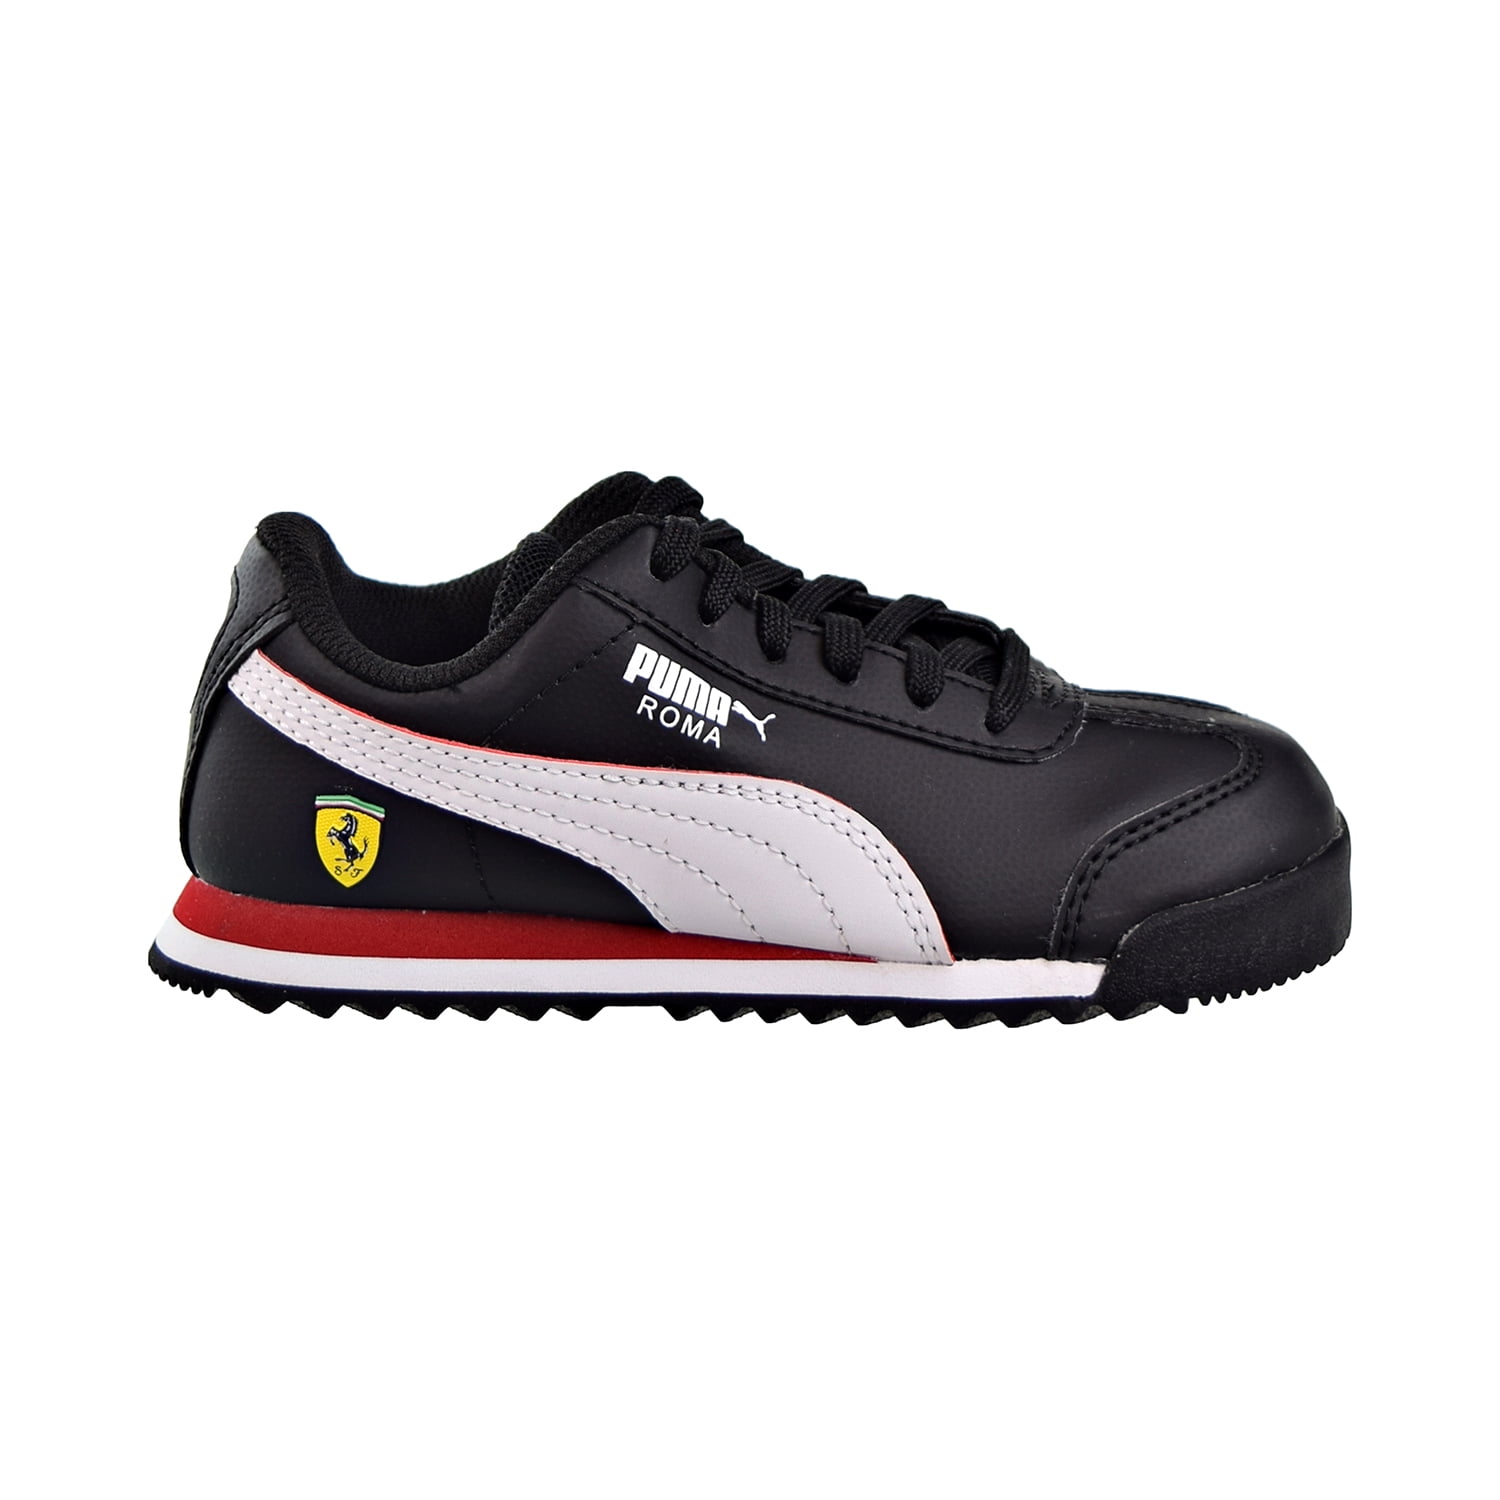 Puma Scuderia Ferrari Roma PS Little Kids' Shoes Black/White/Rosso ...